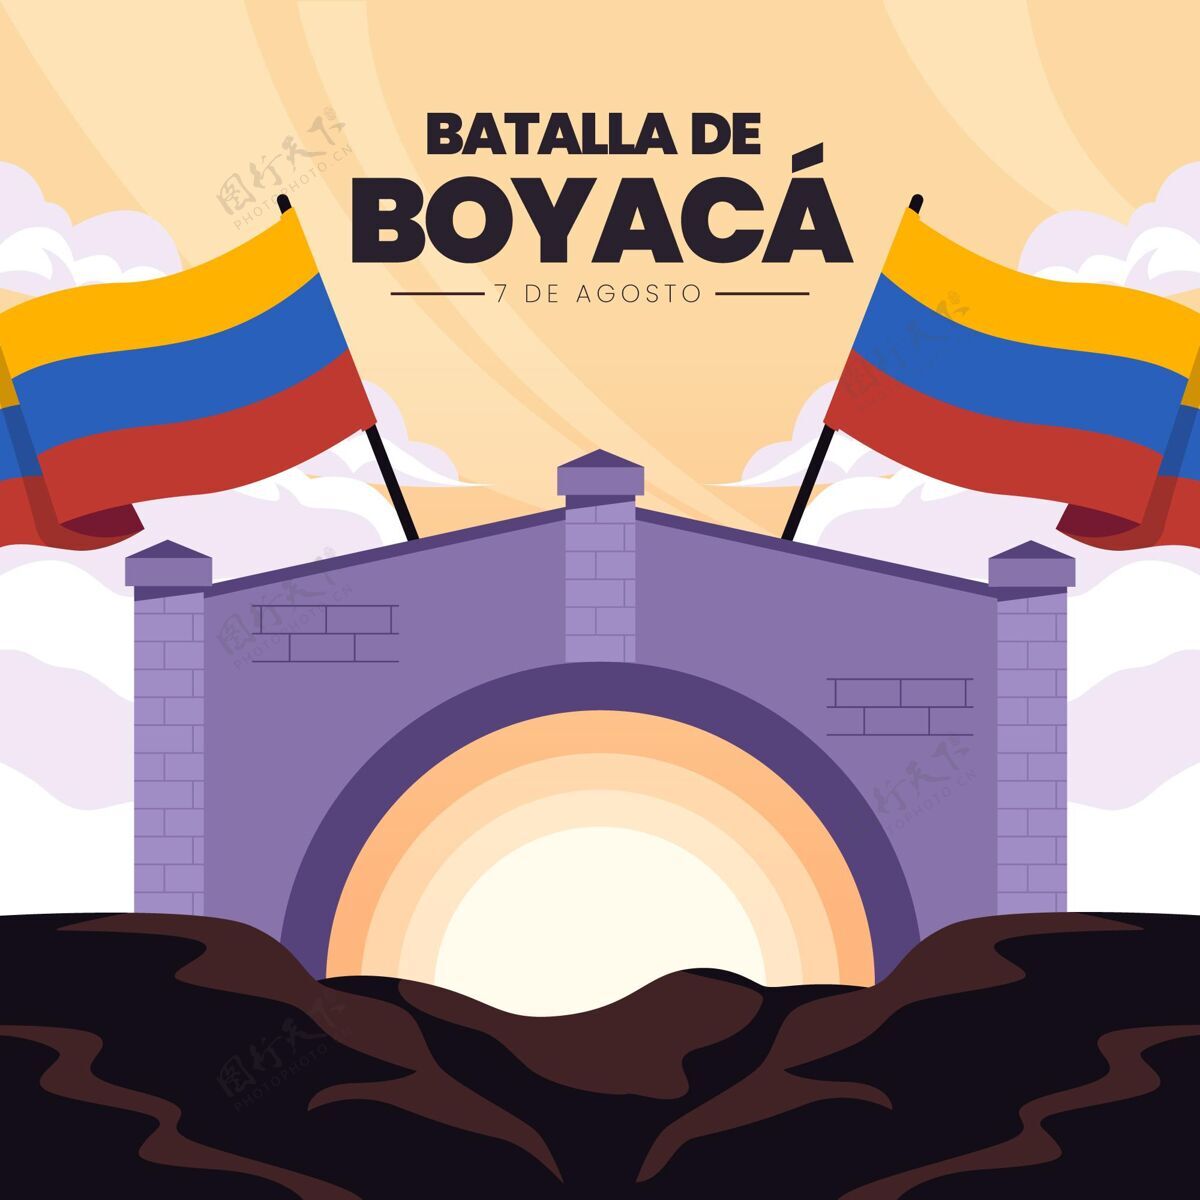 平面设计Batalladeboyaca插图哥伦比亚人胜利自由